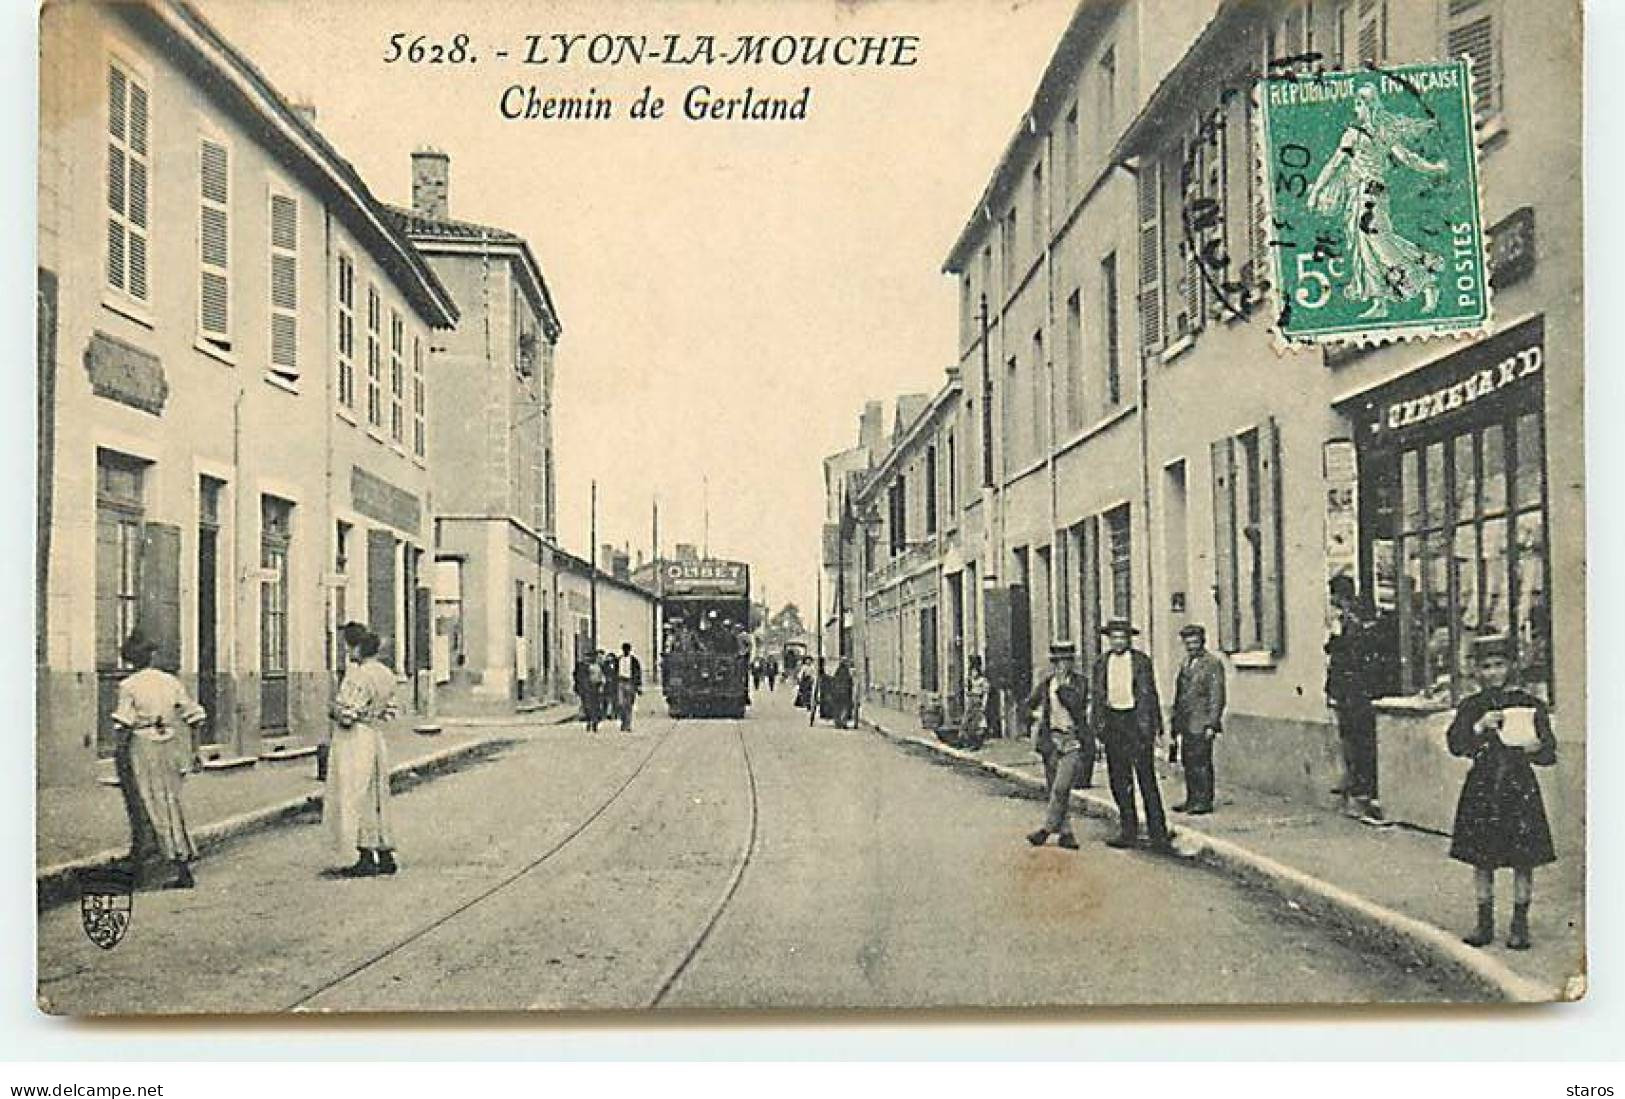 LYON-LA-MOUCHE - Lyon VII - Chemin De Gerland - Tramway, Commerces - Lyon 7